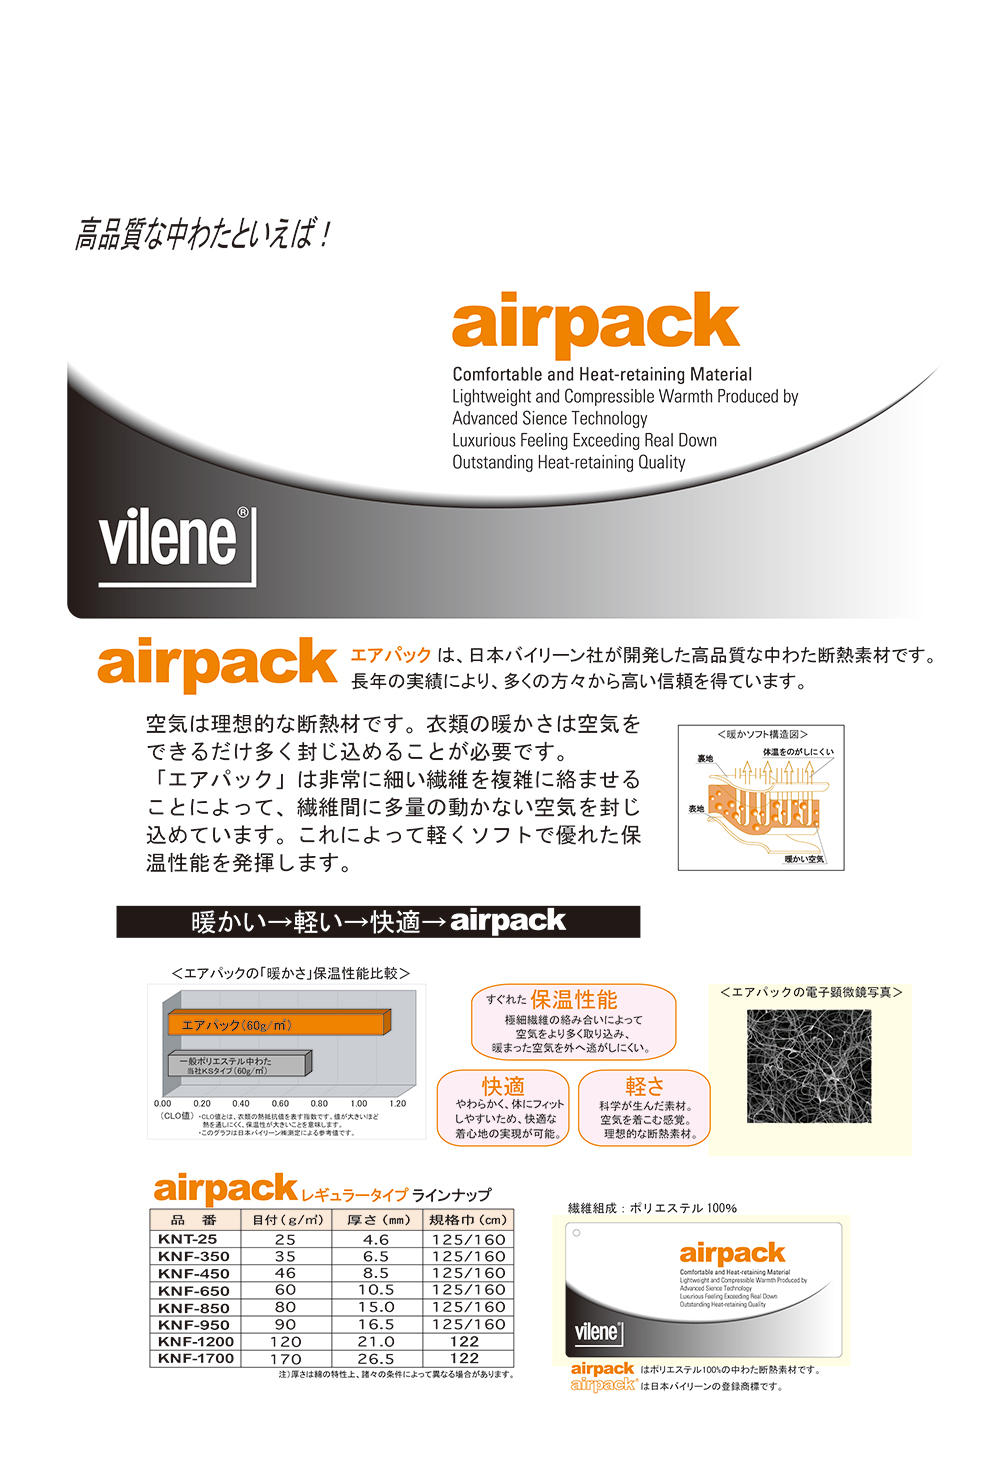 KNF650 Quilt Batting Air Pack 60g[Einlage] Vilene (JAPAN Vilene)